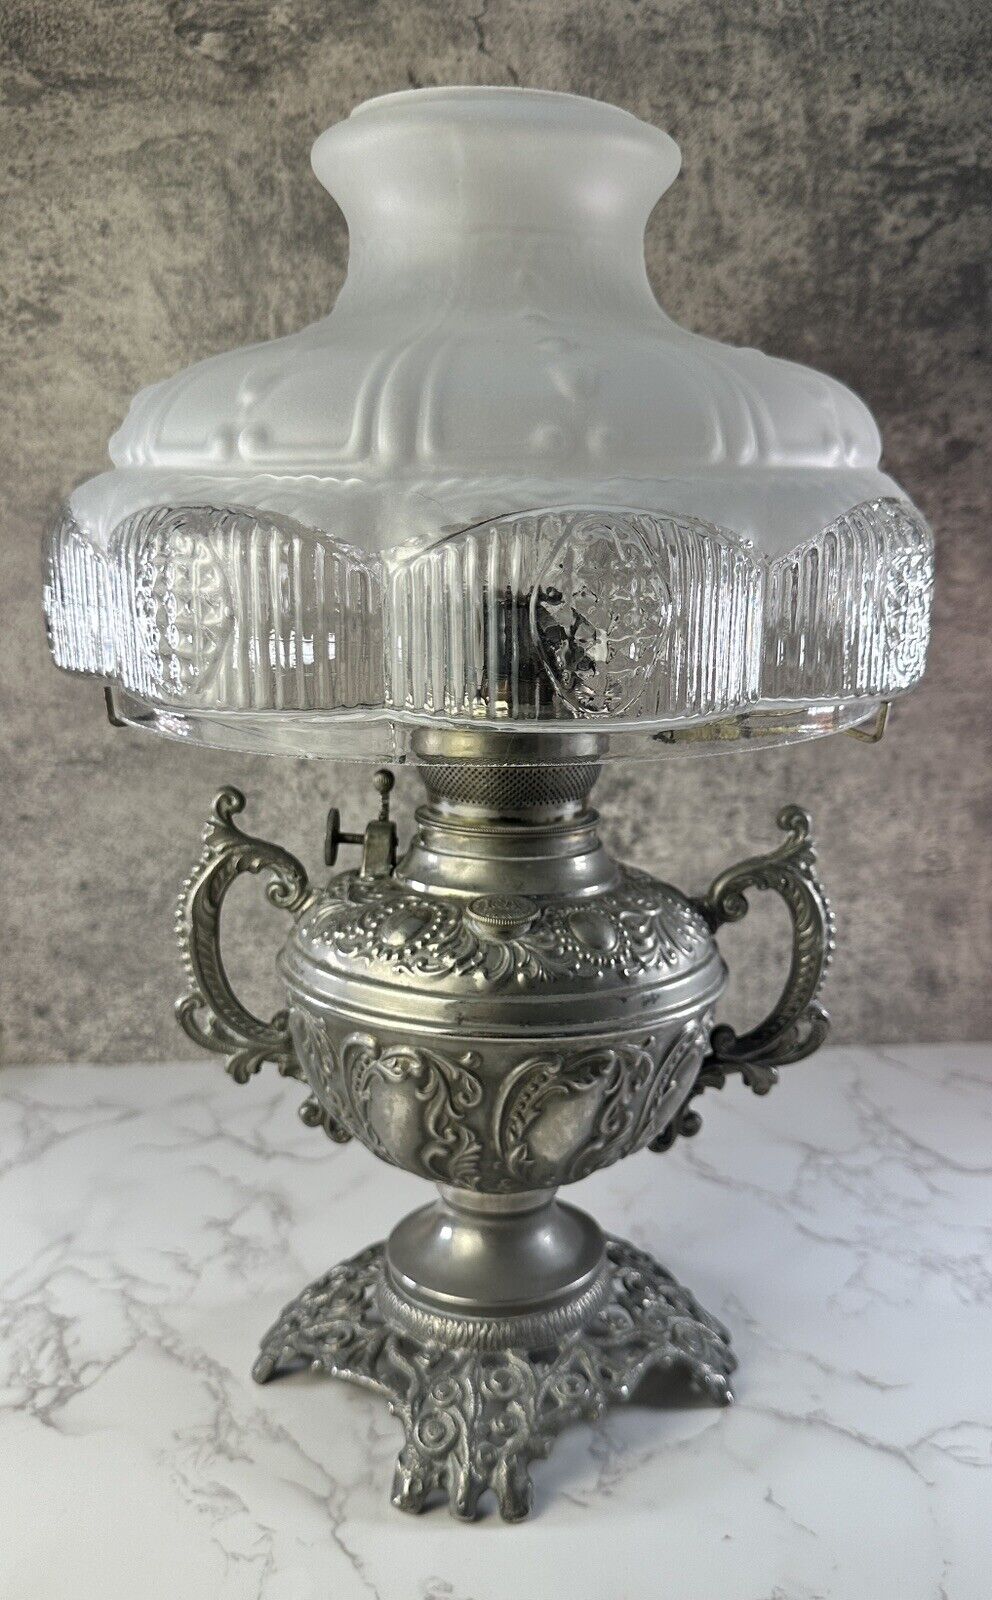 Antique B&H Bradley Hubbard Kerosene Oil Lamp 1800s Orig Glass Shade Must See